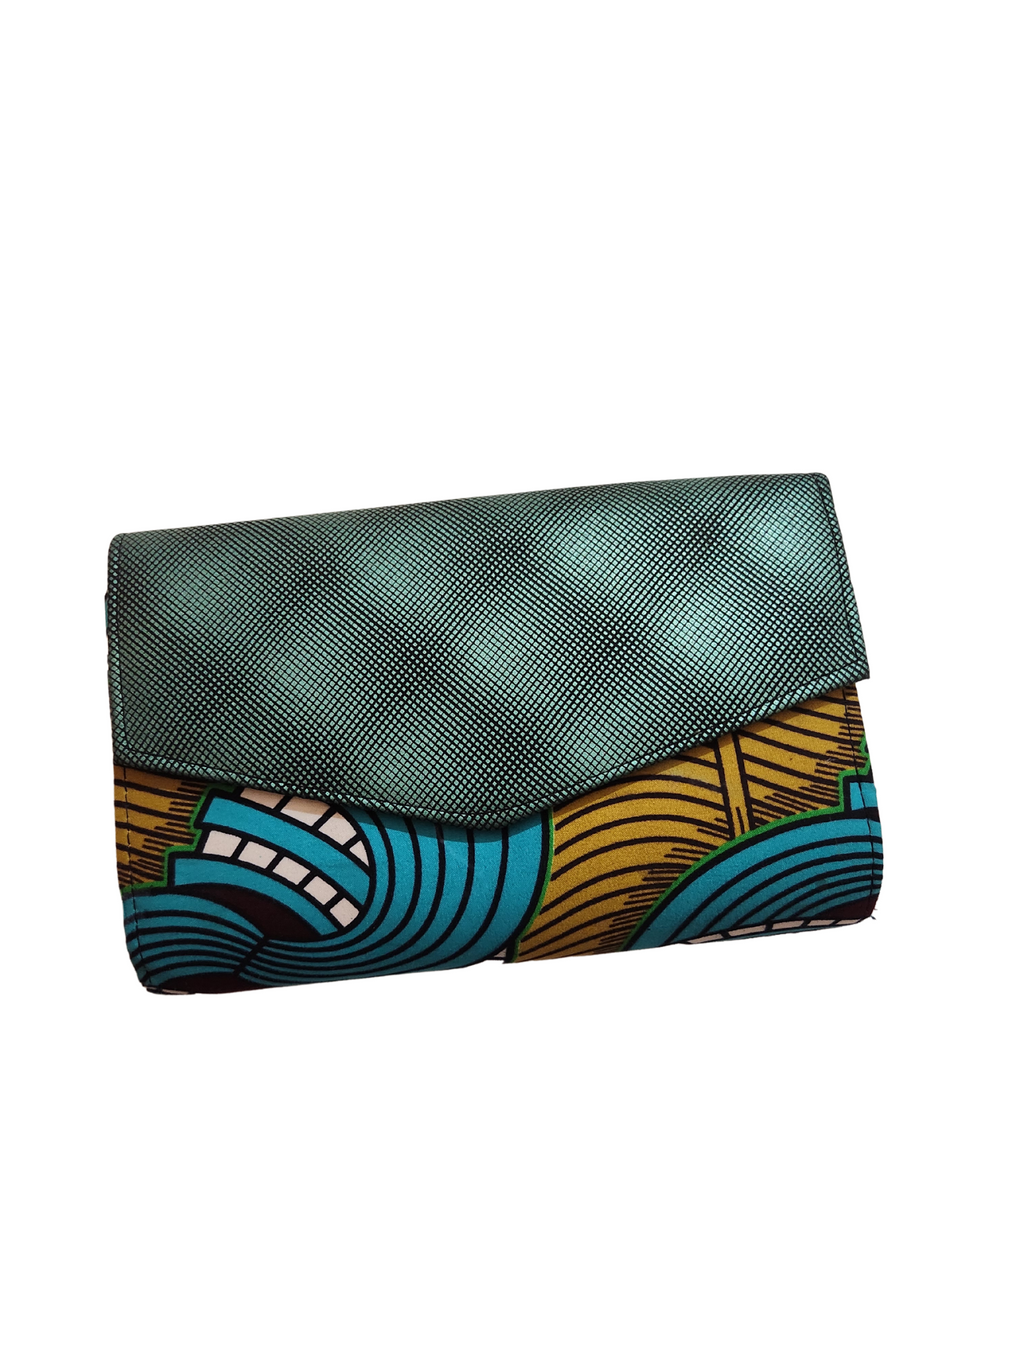 African clutch purse